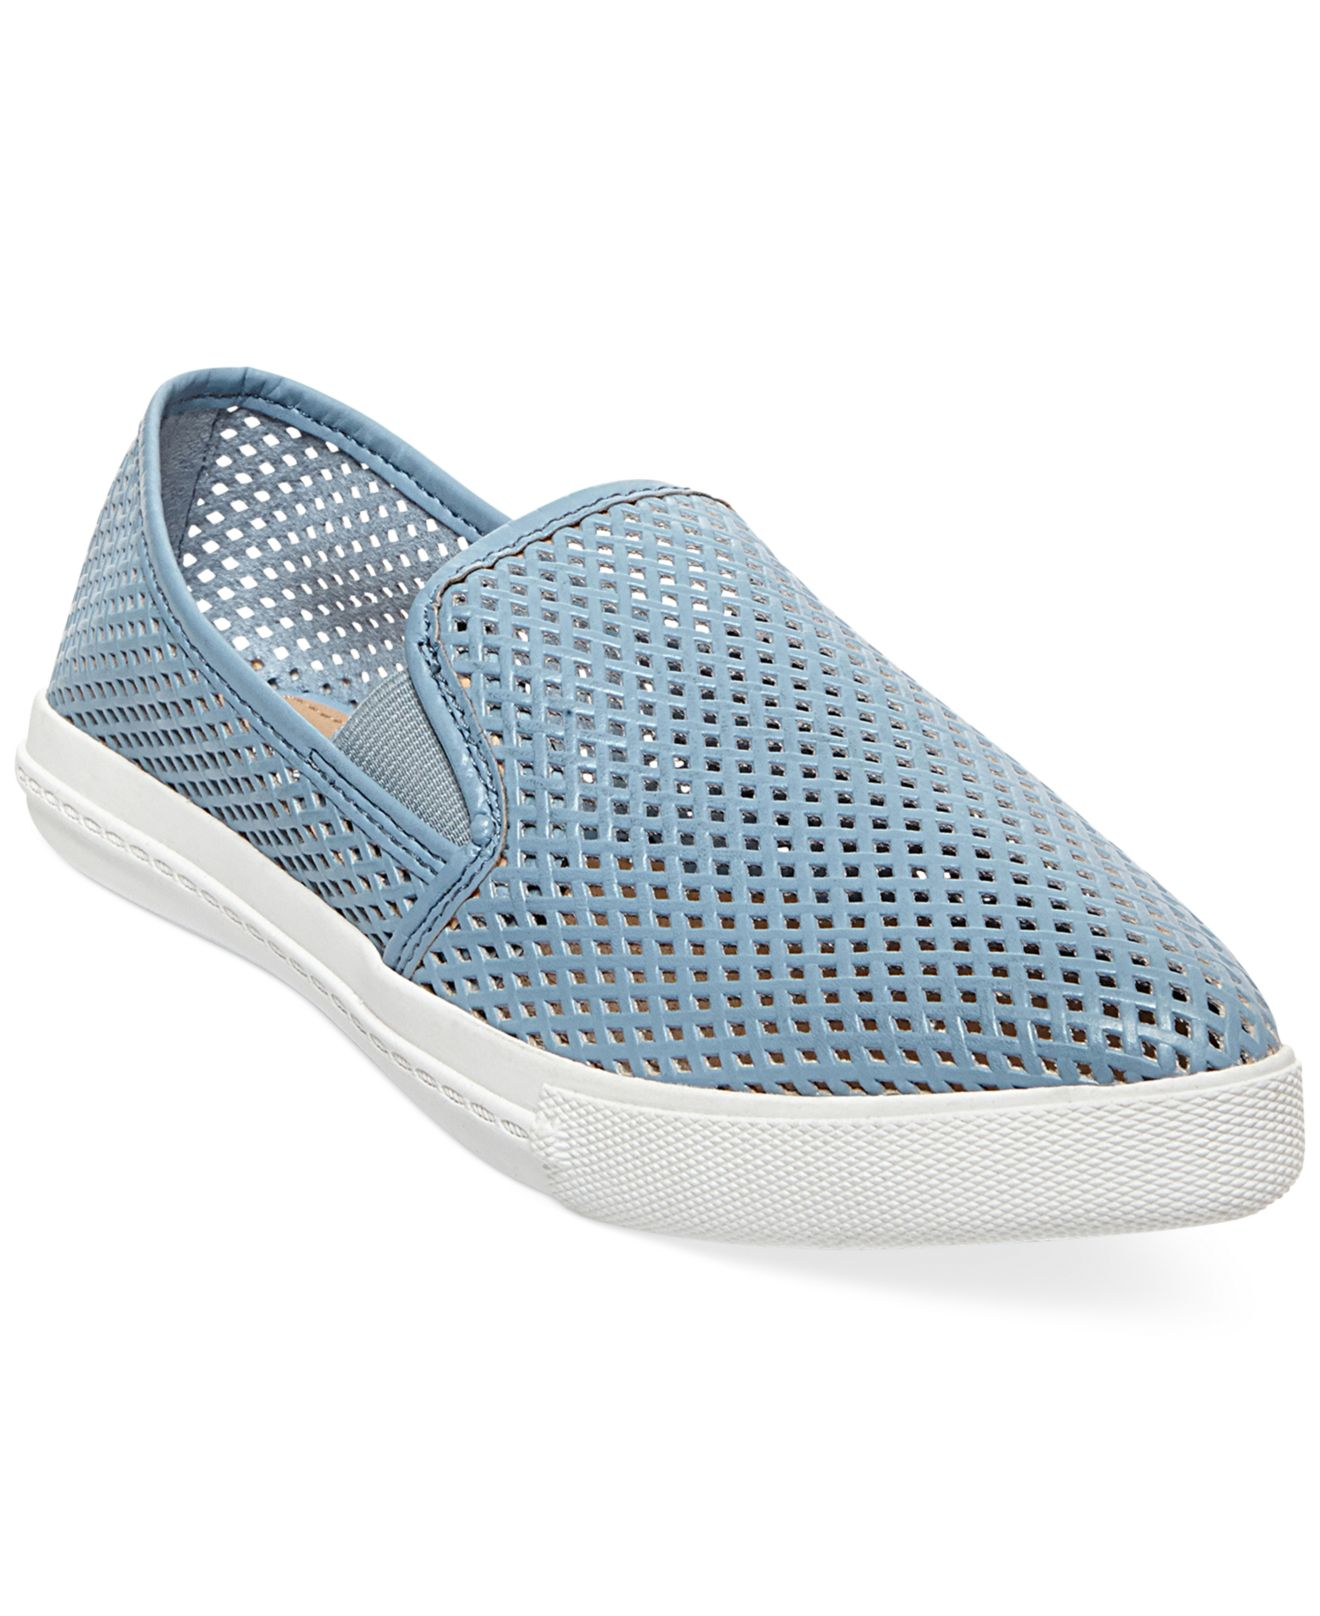 Steve madden Women's Virggo Slip-on Sneakers in Blue | Lyst